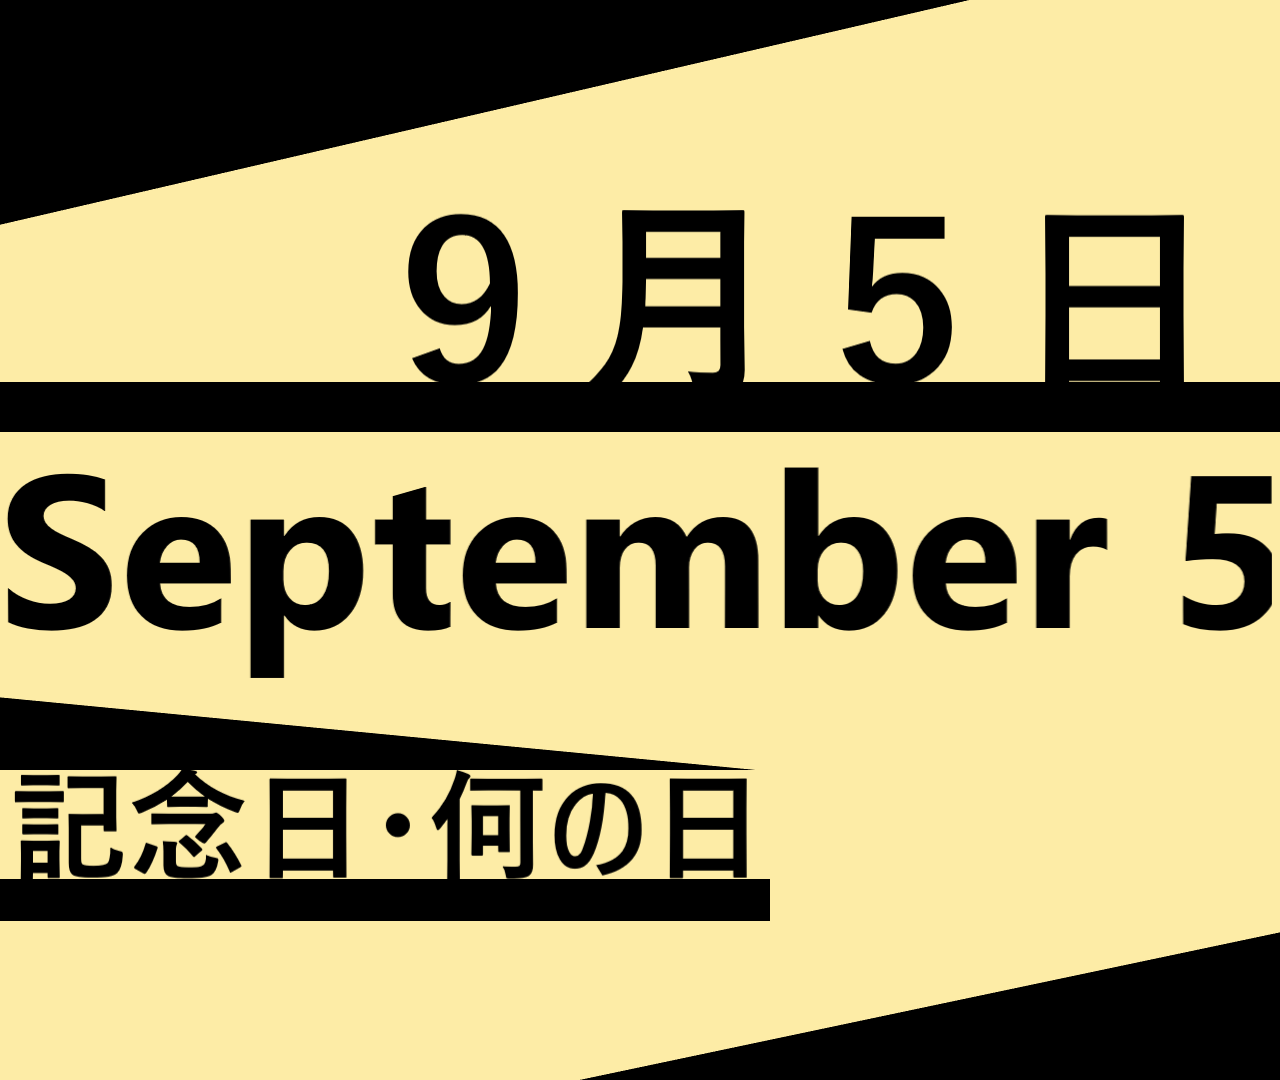 ９月５日の記念日 何の日ー世界チャリティーデー ライトニング マックィーンデイなど 語呂合わせ 食べ物関連 世界 海外 日本 ロキノログーロキの 備忘録的ブログ